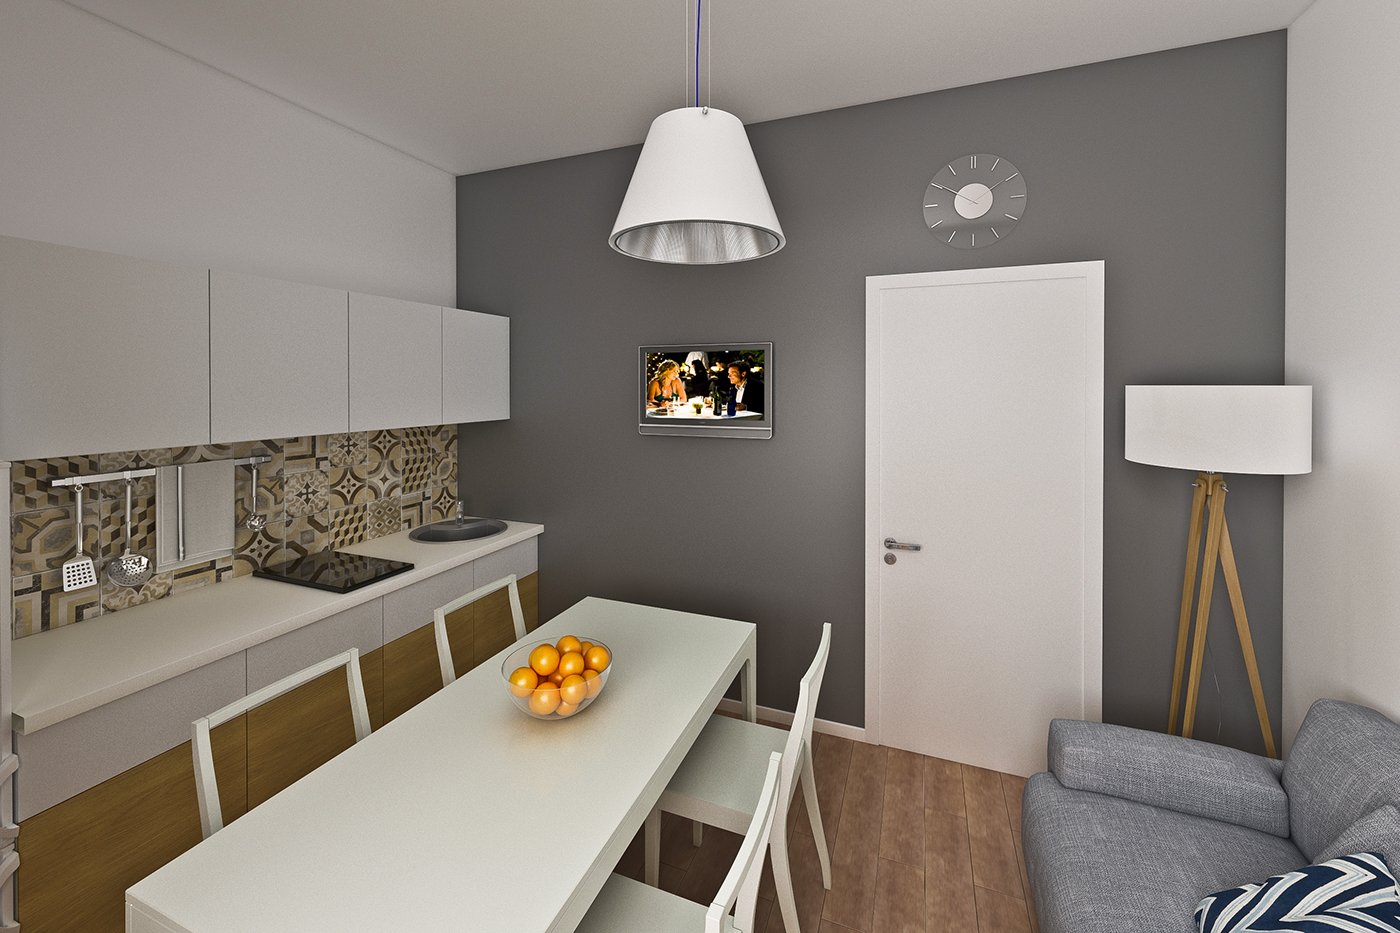 Кухня-гостиная 10-11 кв.м.: 100 фото дизайна интерьера с диваном, идеи оформления